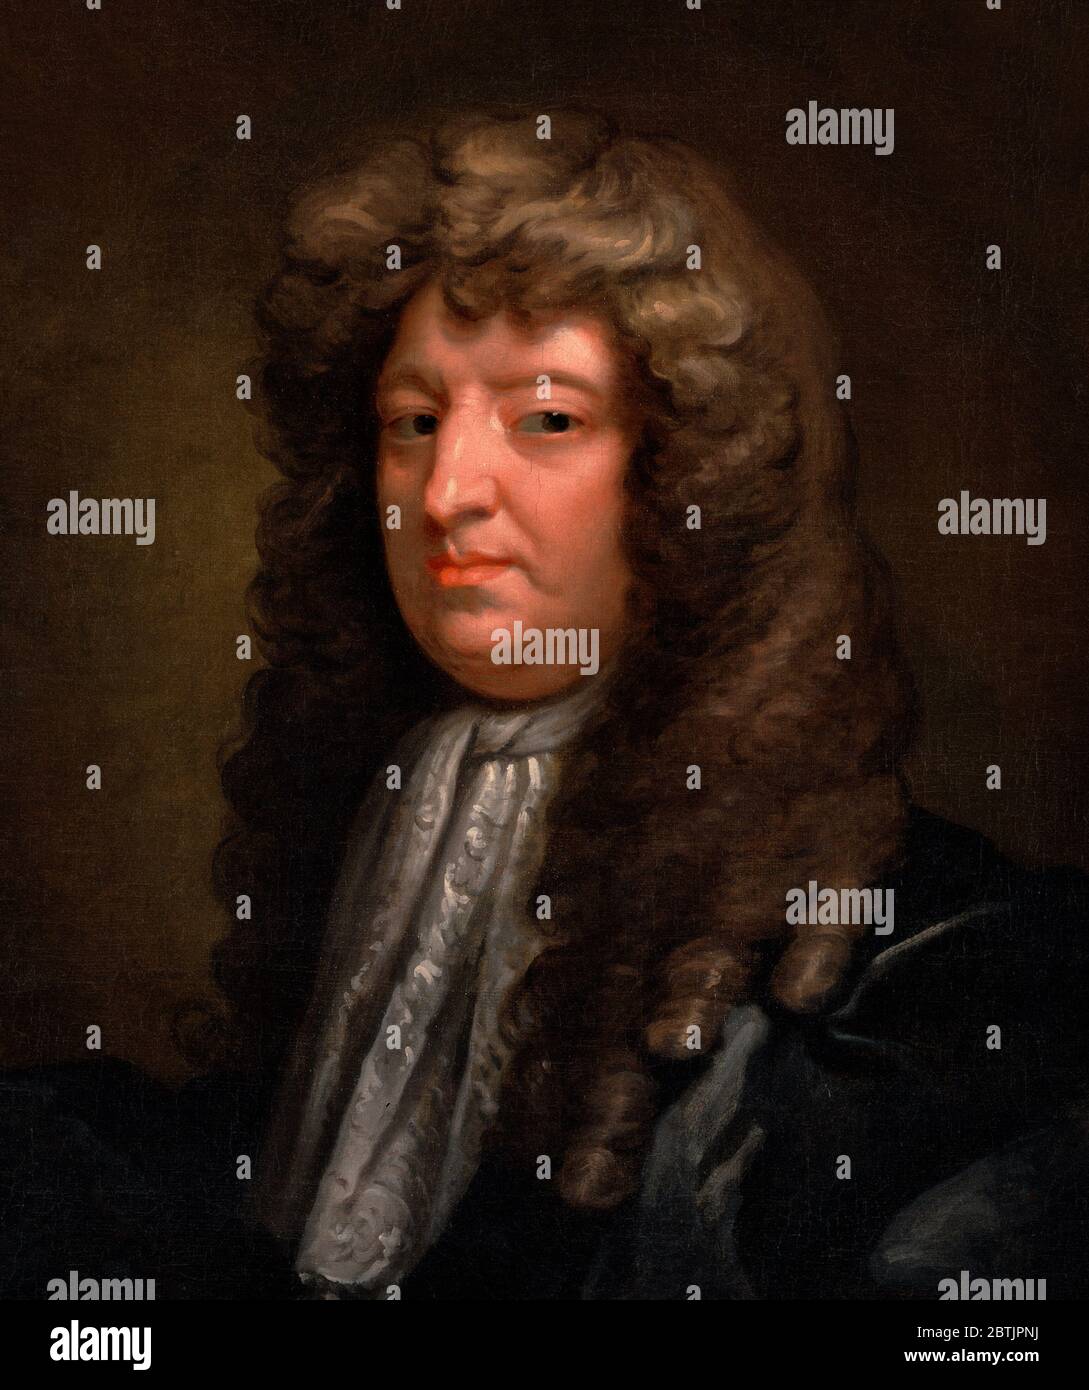 Samuel Butler (1613–1680) par Gilbert Soest, huile sur toile, v.1675. Butler était un poète anglais et satiriste 17thC, connu pour son long poème satirique « Hudibras » et le roman satirique « Erewhon ». Banque D'Images